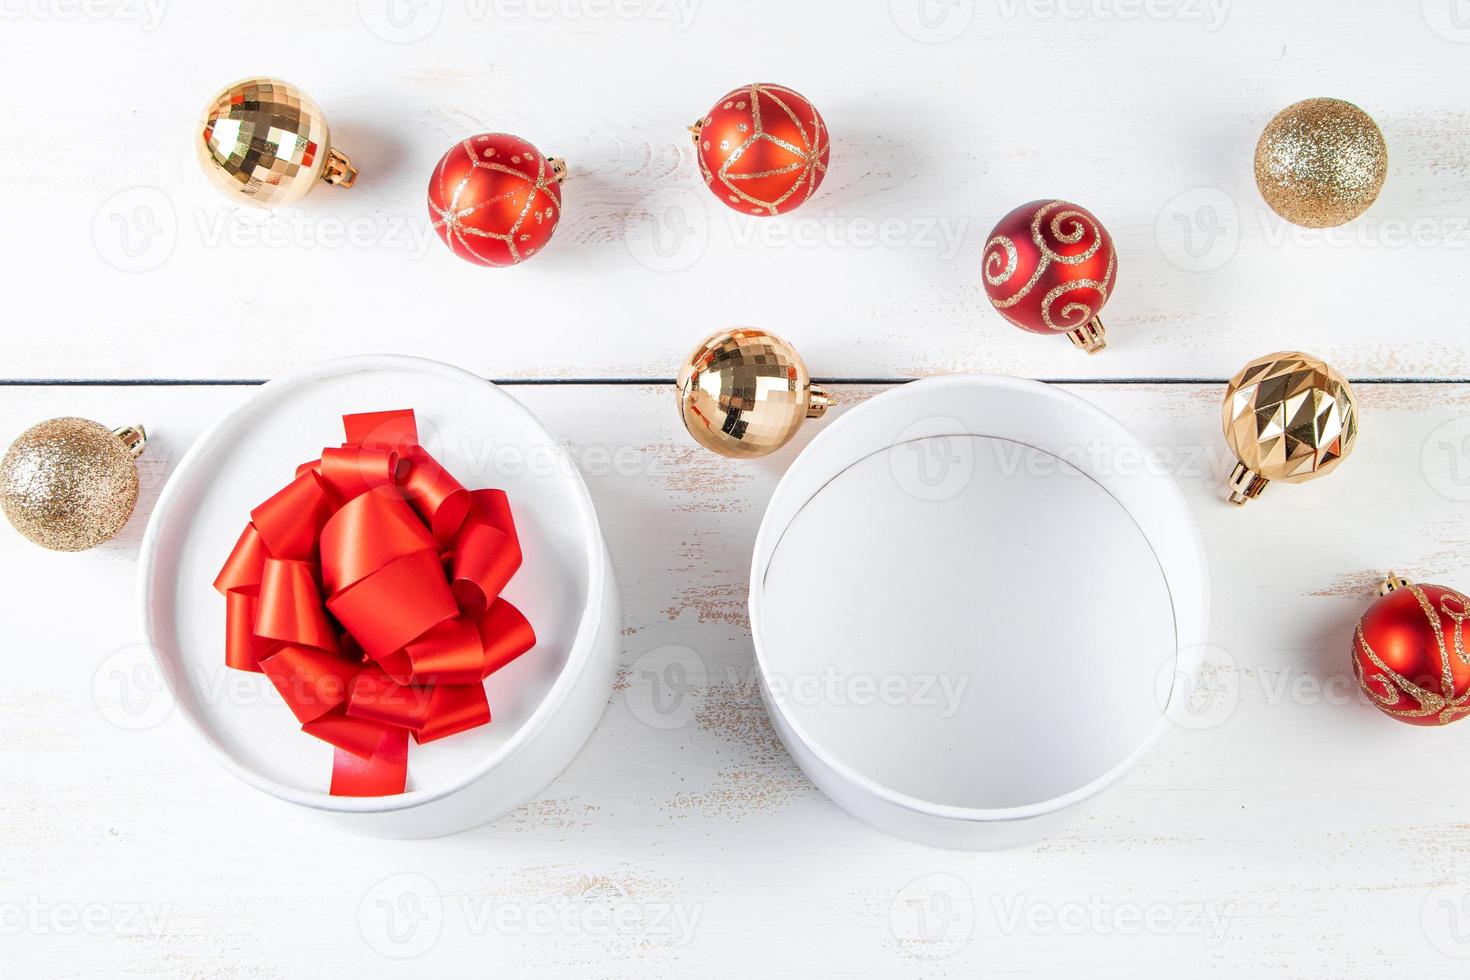 Geschenkboxen mit rotem Band und Weihnachtskugeln auf weißem Hintergrund. foto